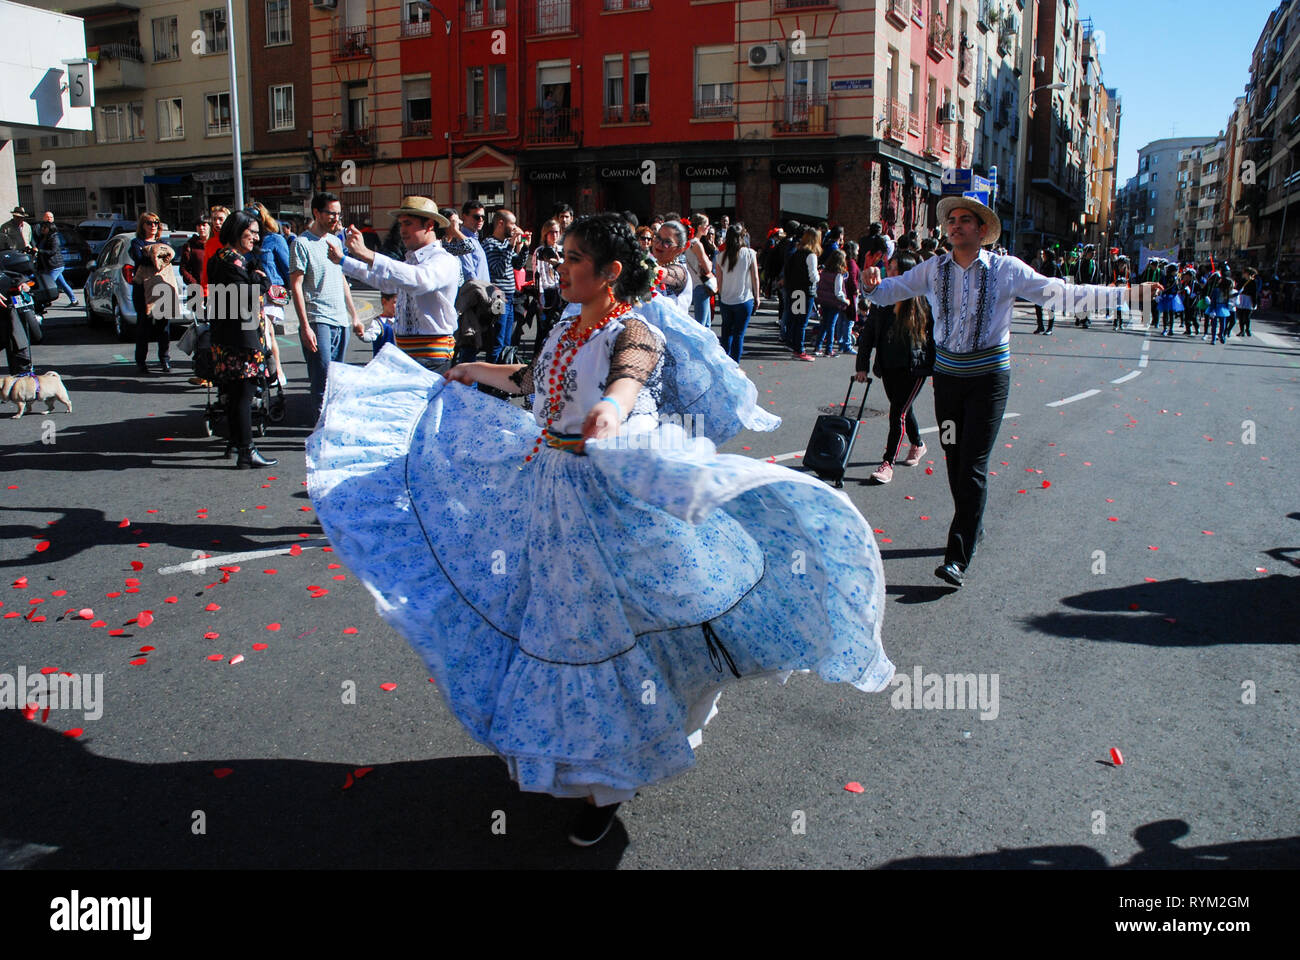 Madrid, Espagne, le 2 mars 2019 : défilé carnavalesque, membres du groupe de danse paraguayenne en spectacle avec costumes traditionnels Banque D'Images